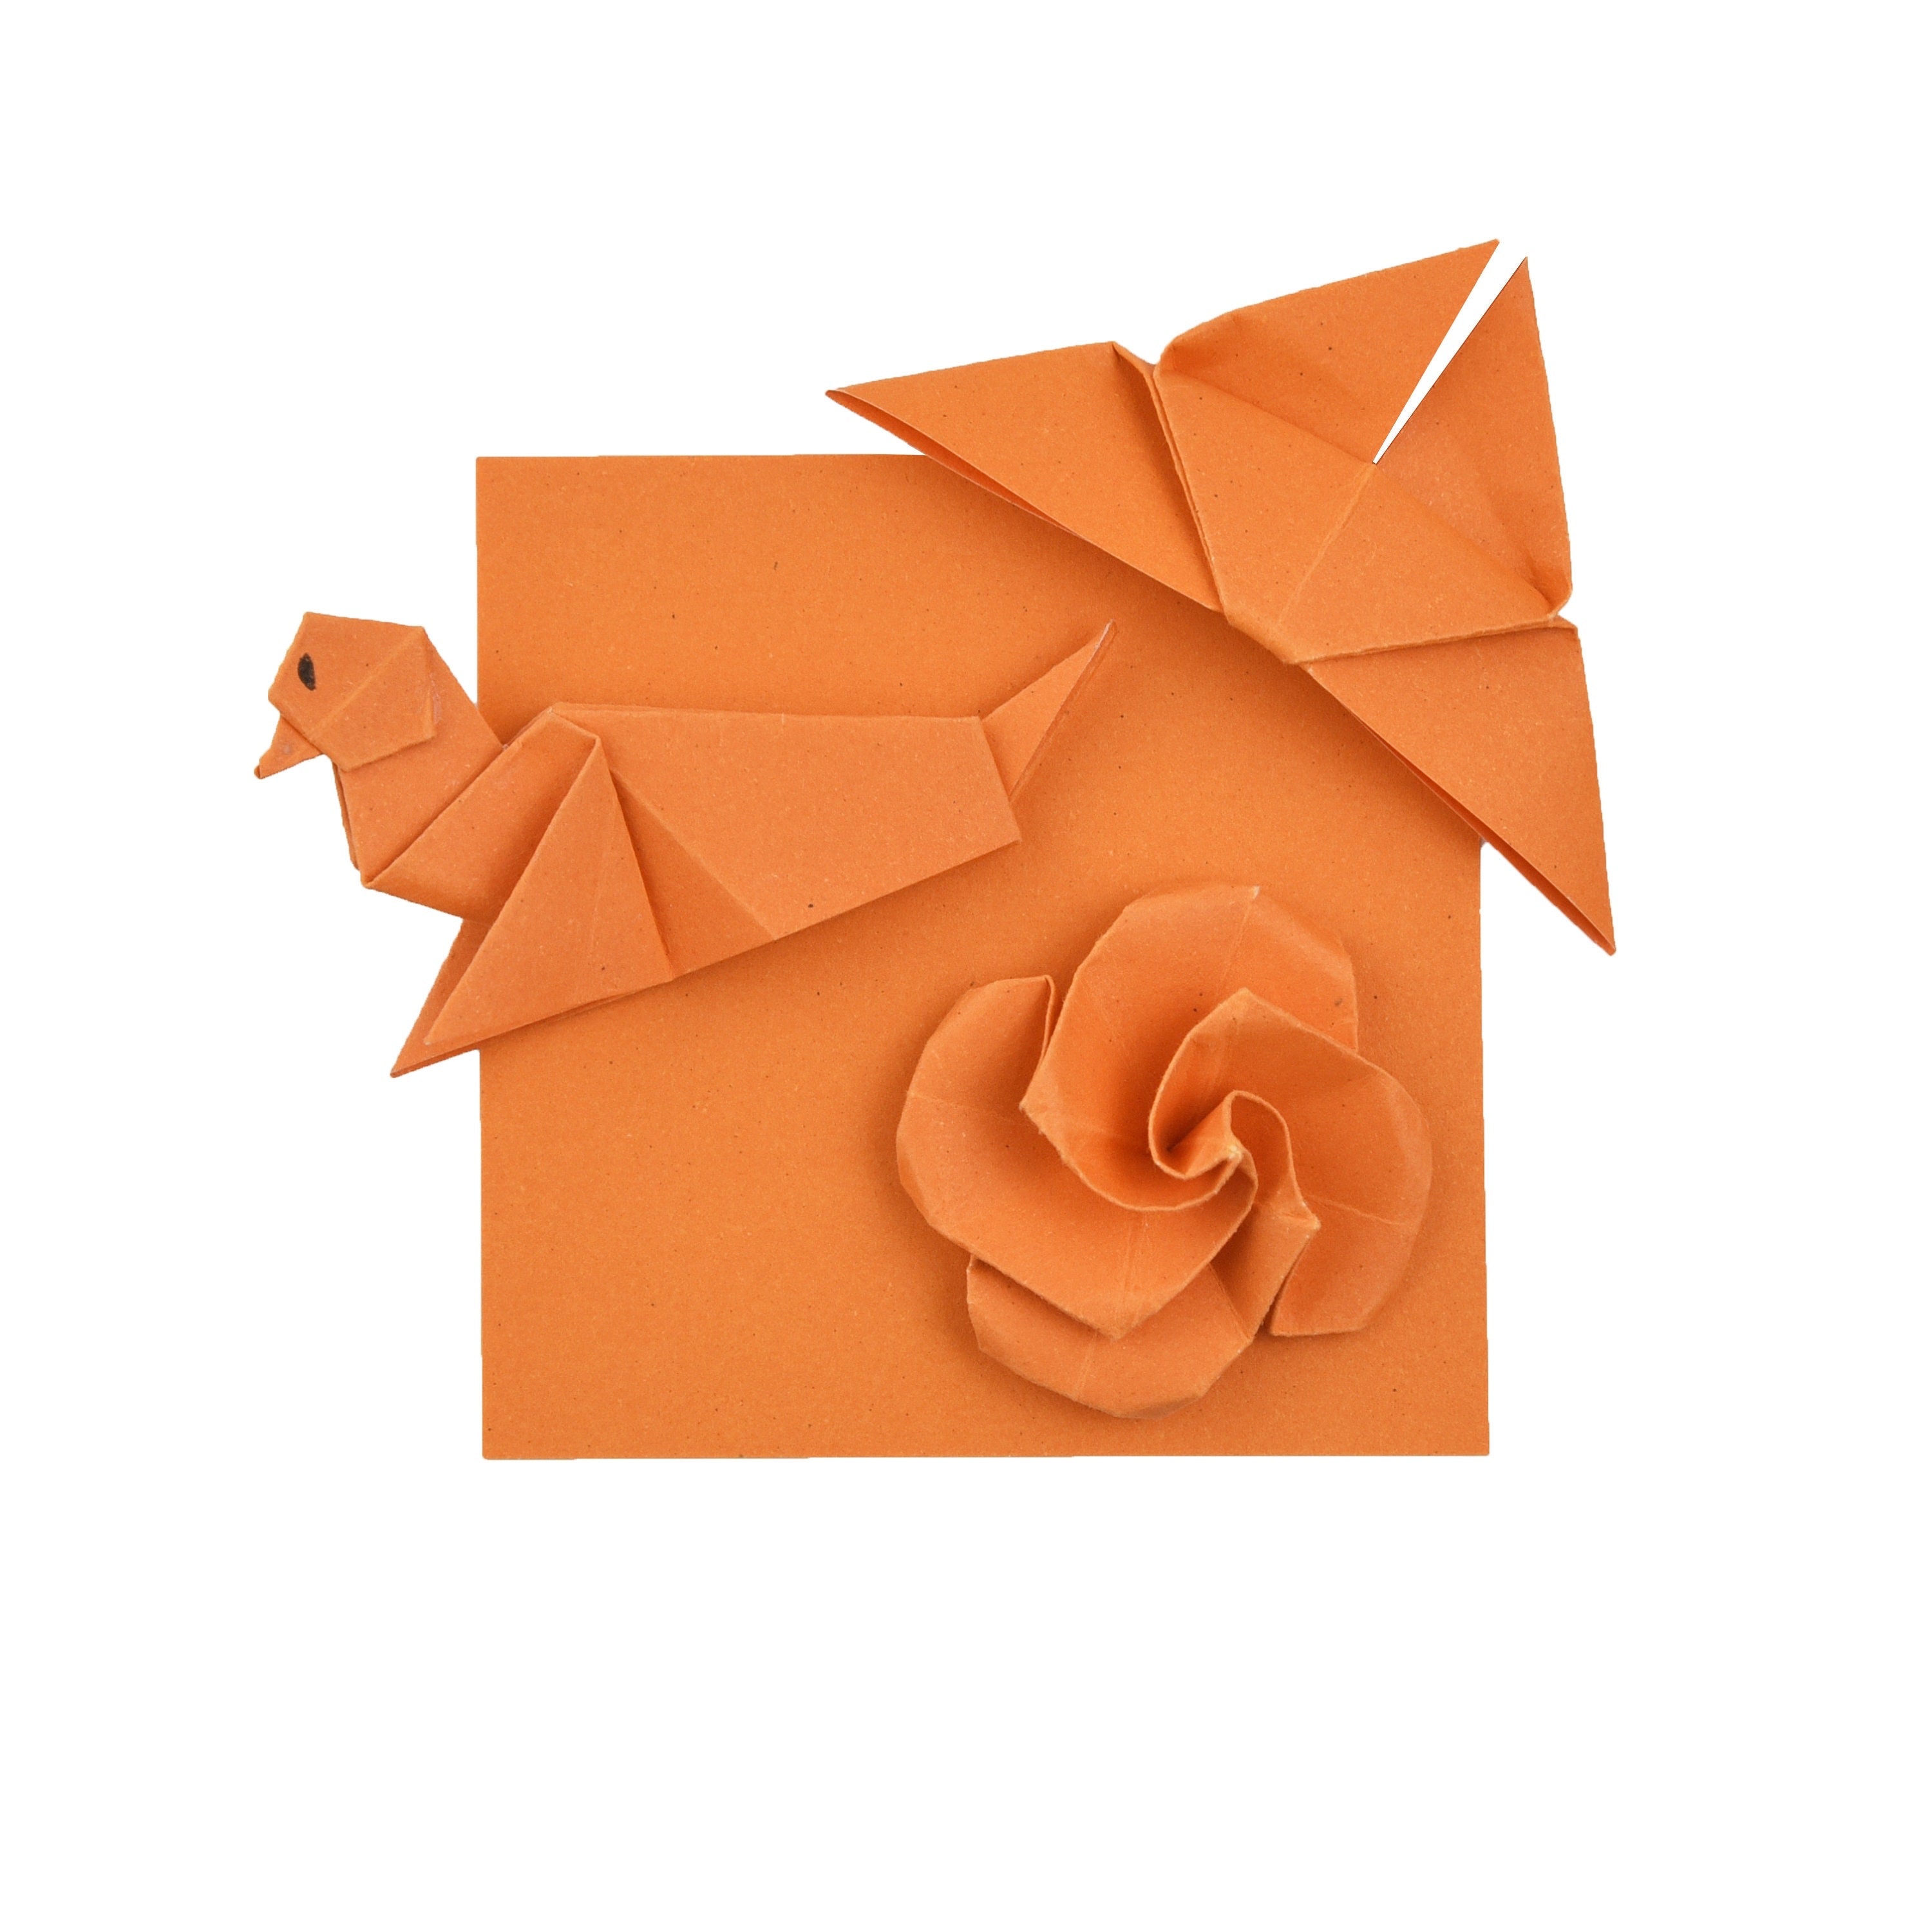 100 fogli di carta origami - 3x3 pollici - Confezione di carta quadrata per piegare, gru origami e decorazioni - S03